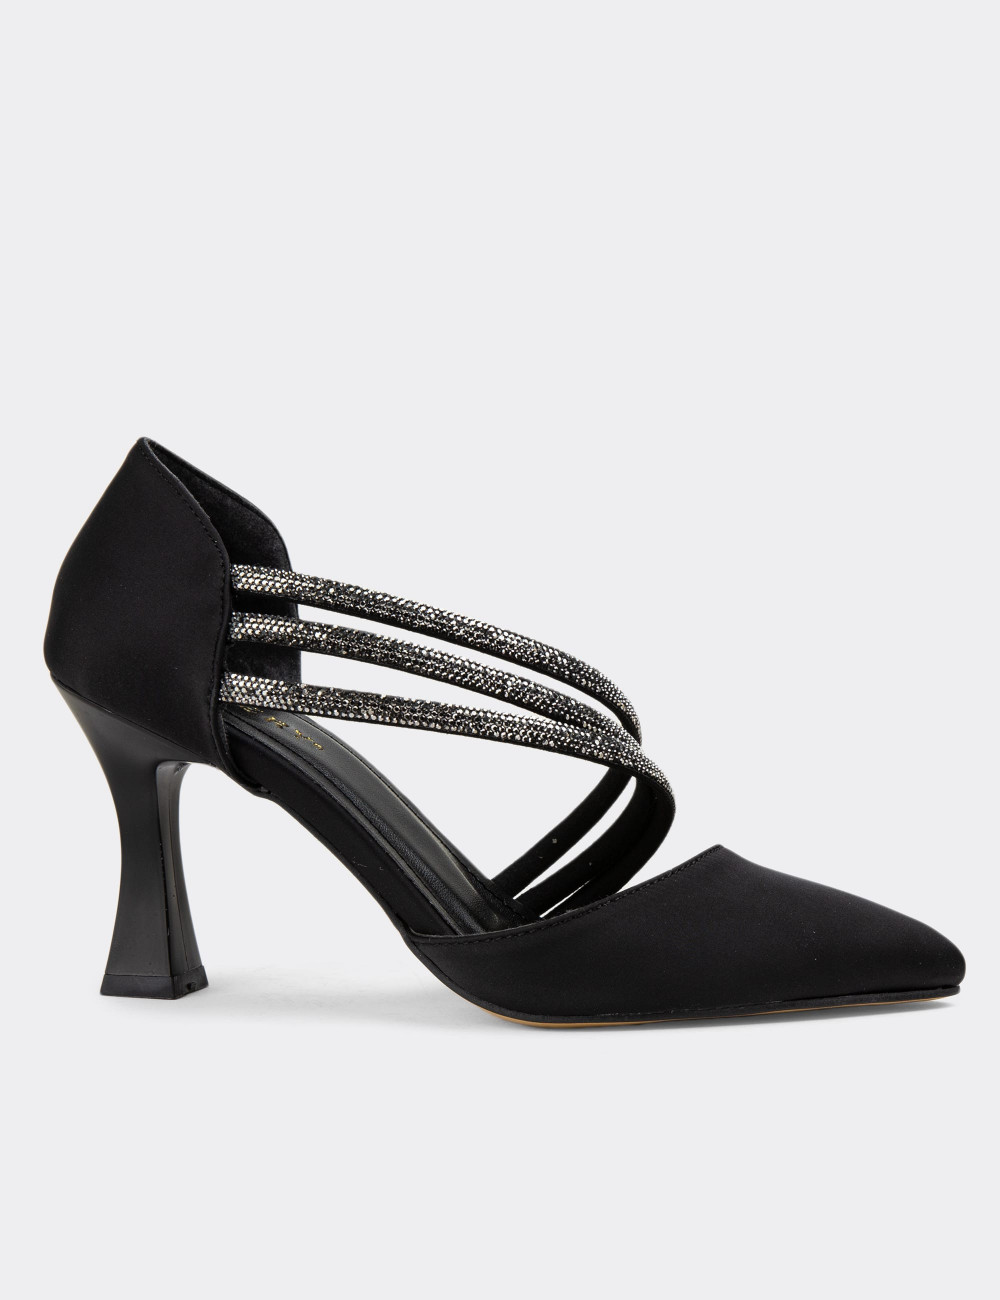 Siyah Taşlı Topuklu Kadın Abiye Ayakkabı - K0553ZSYHM01